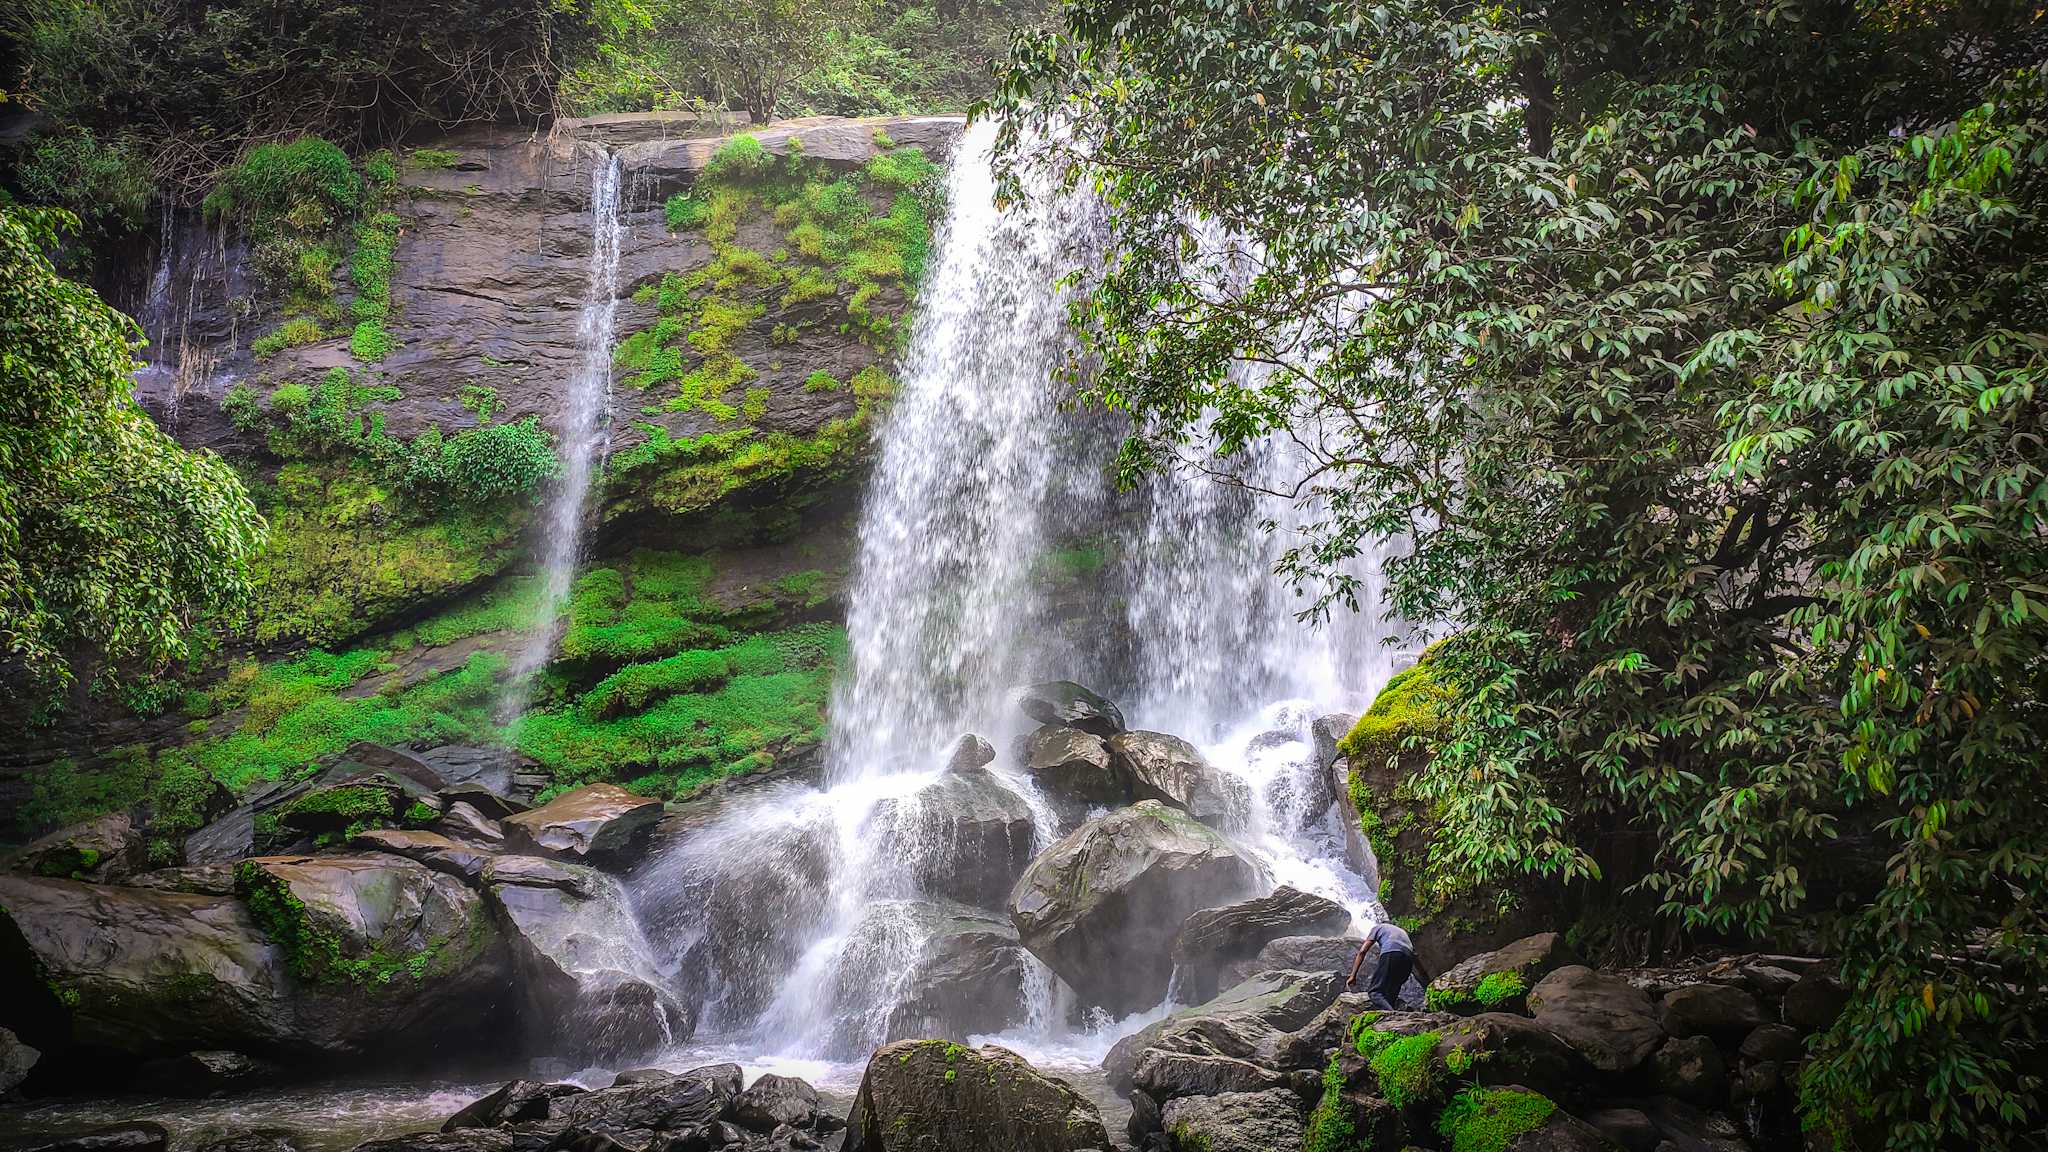 Punnayar Waterfalls